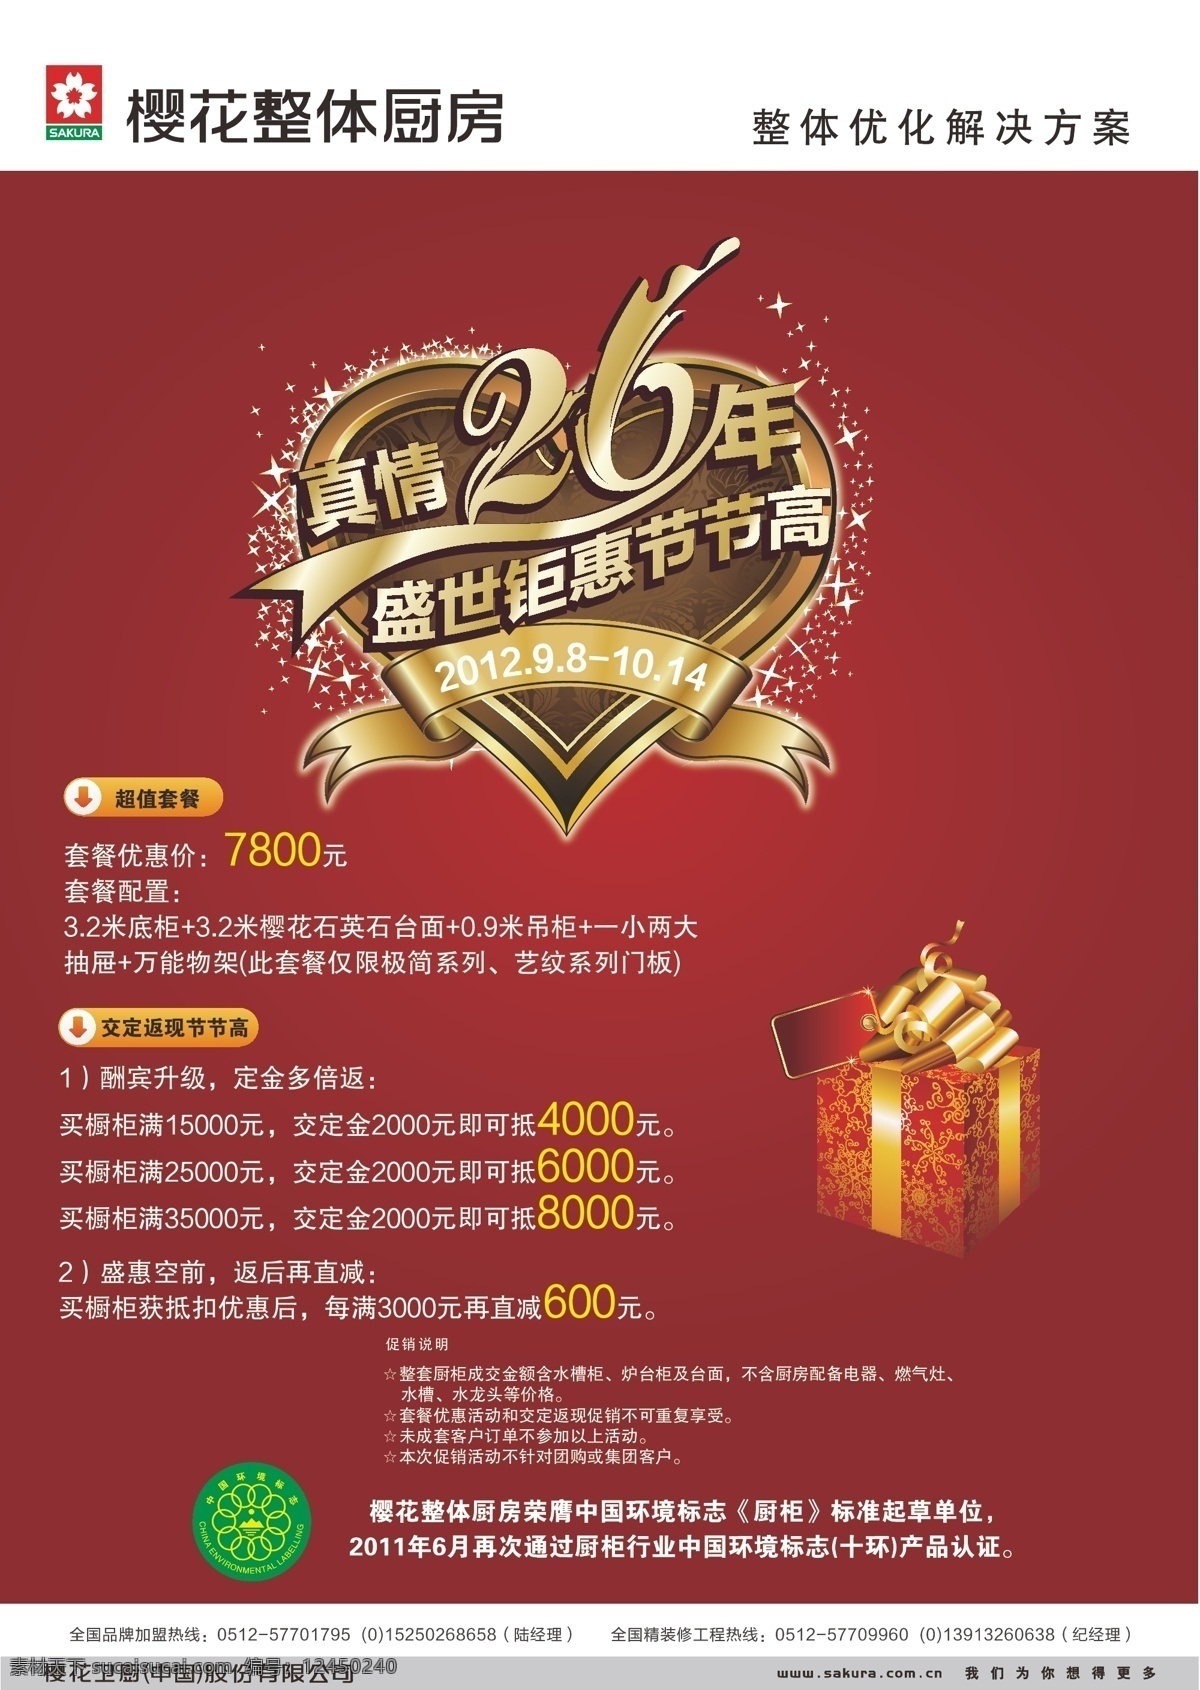 红色背景 礼盒 樱花 整体厨房 海报 矢量 模板下载 标志 周年庆 艺术 字 心 型 中国 环境标志 家居装饰素材 室内设计